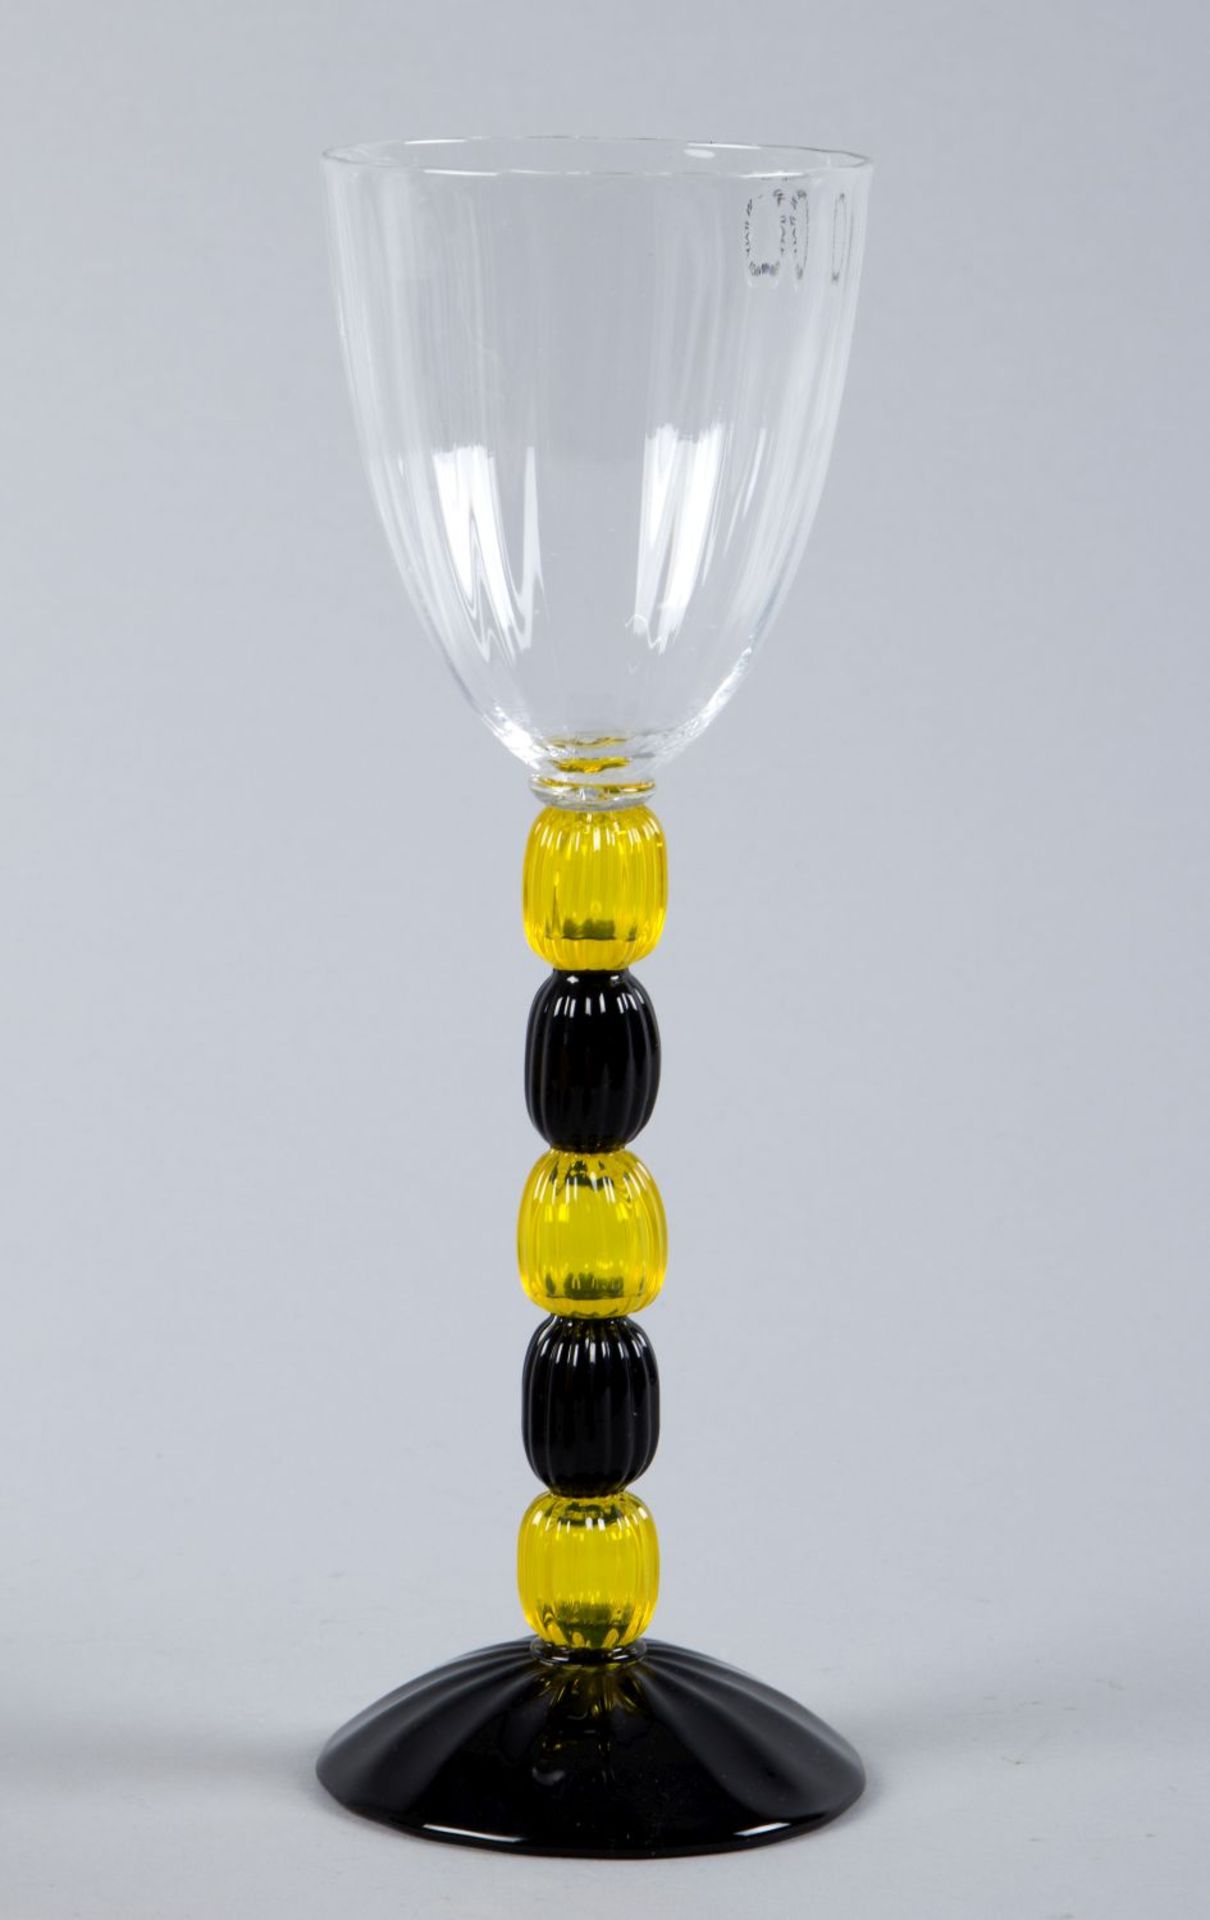 Murano-PokalFarbloses Glas. Hoher schlanker Schaft mit 5 Nodi in Blau und Gelb auf leicht